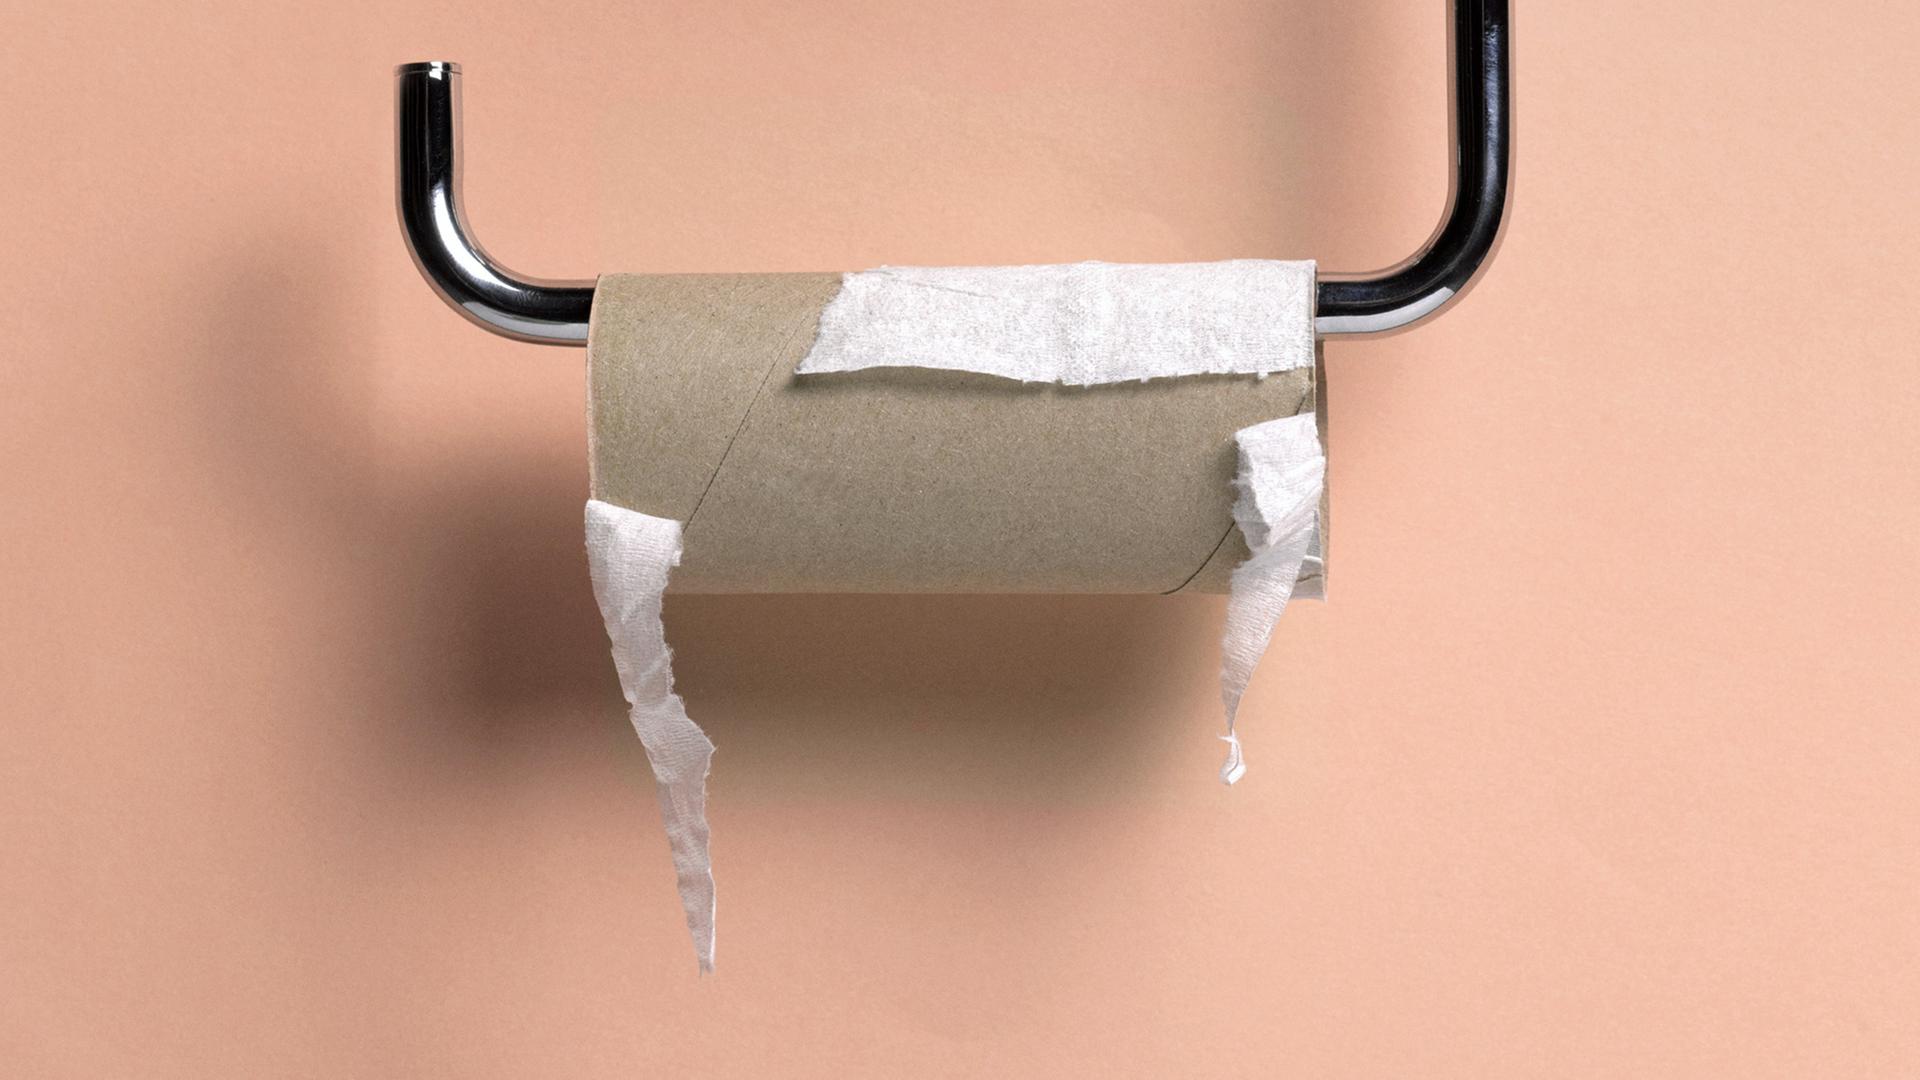 Toilettenpapierhalter mit einer leeren Rolle Klopapier